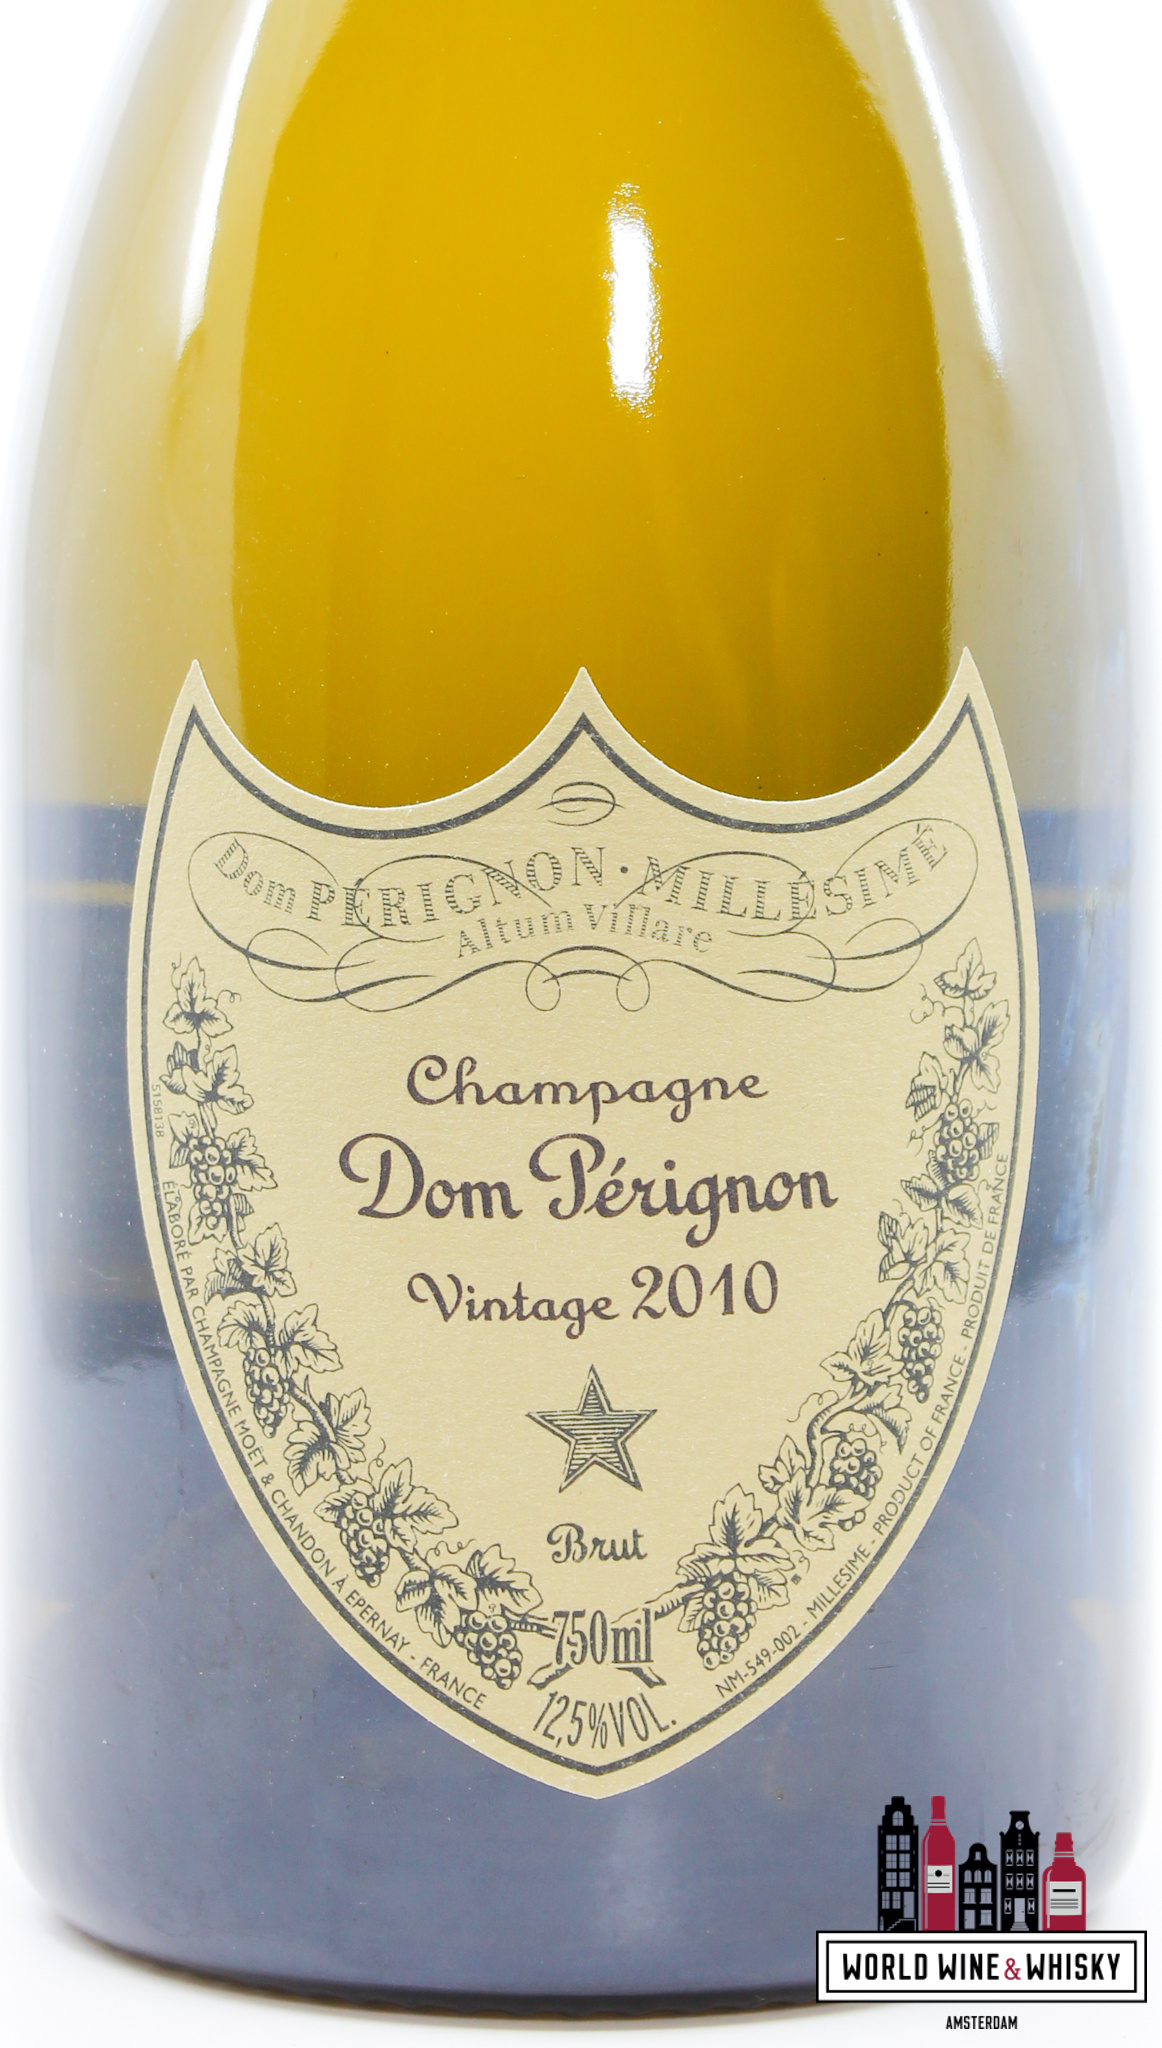 Dom Perignon Dom Perignon 2010 Vintage - Champagne Brut